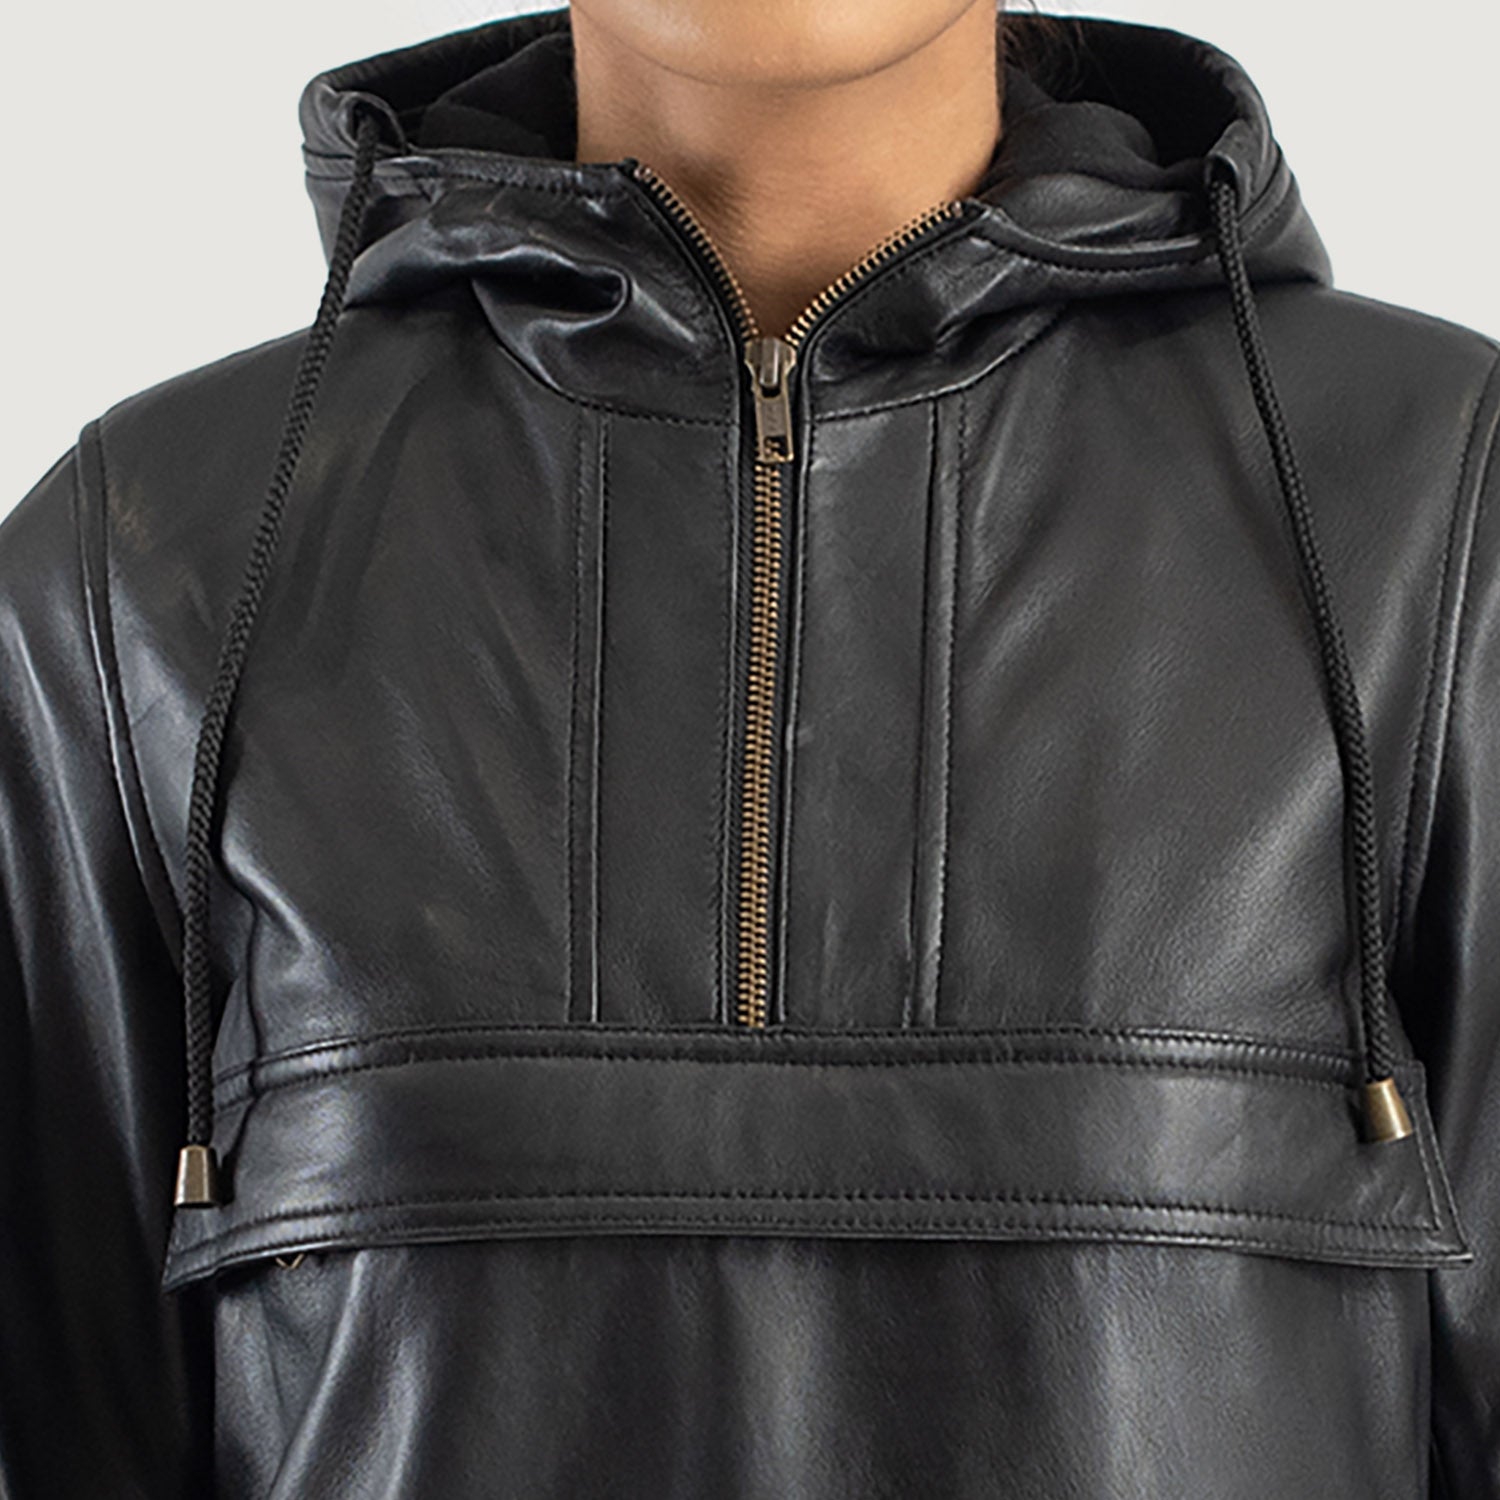 Zest Black Hooded Leather Pullover Jacket